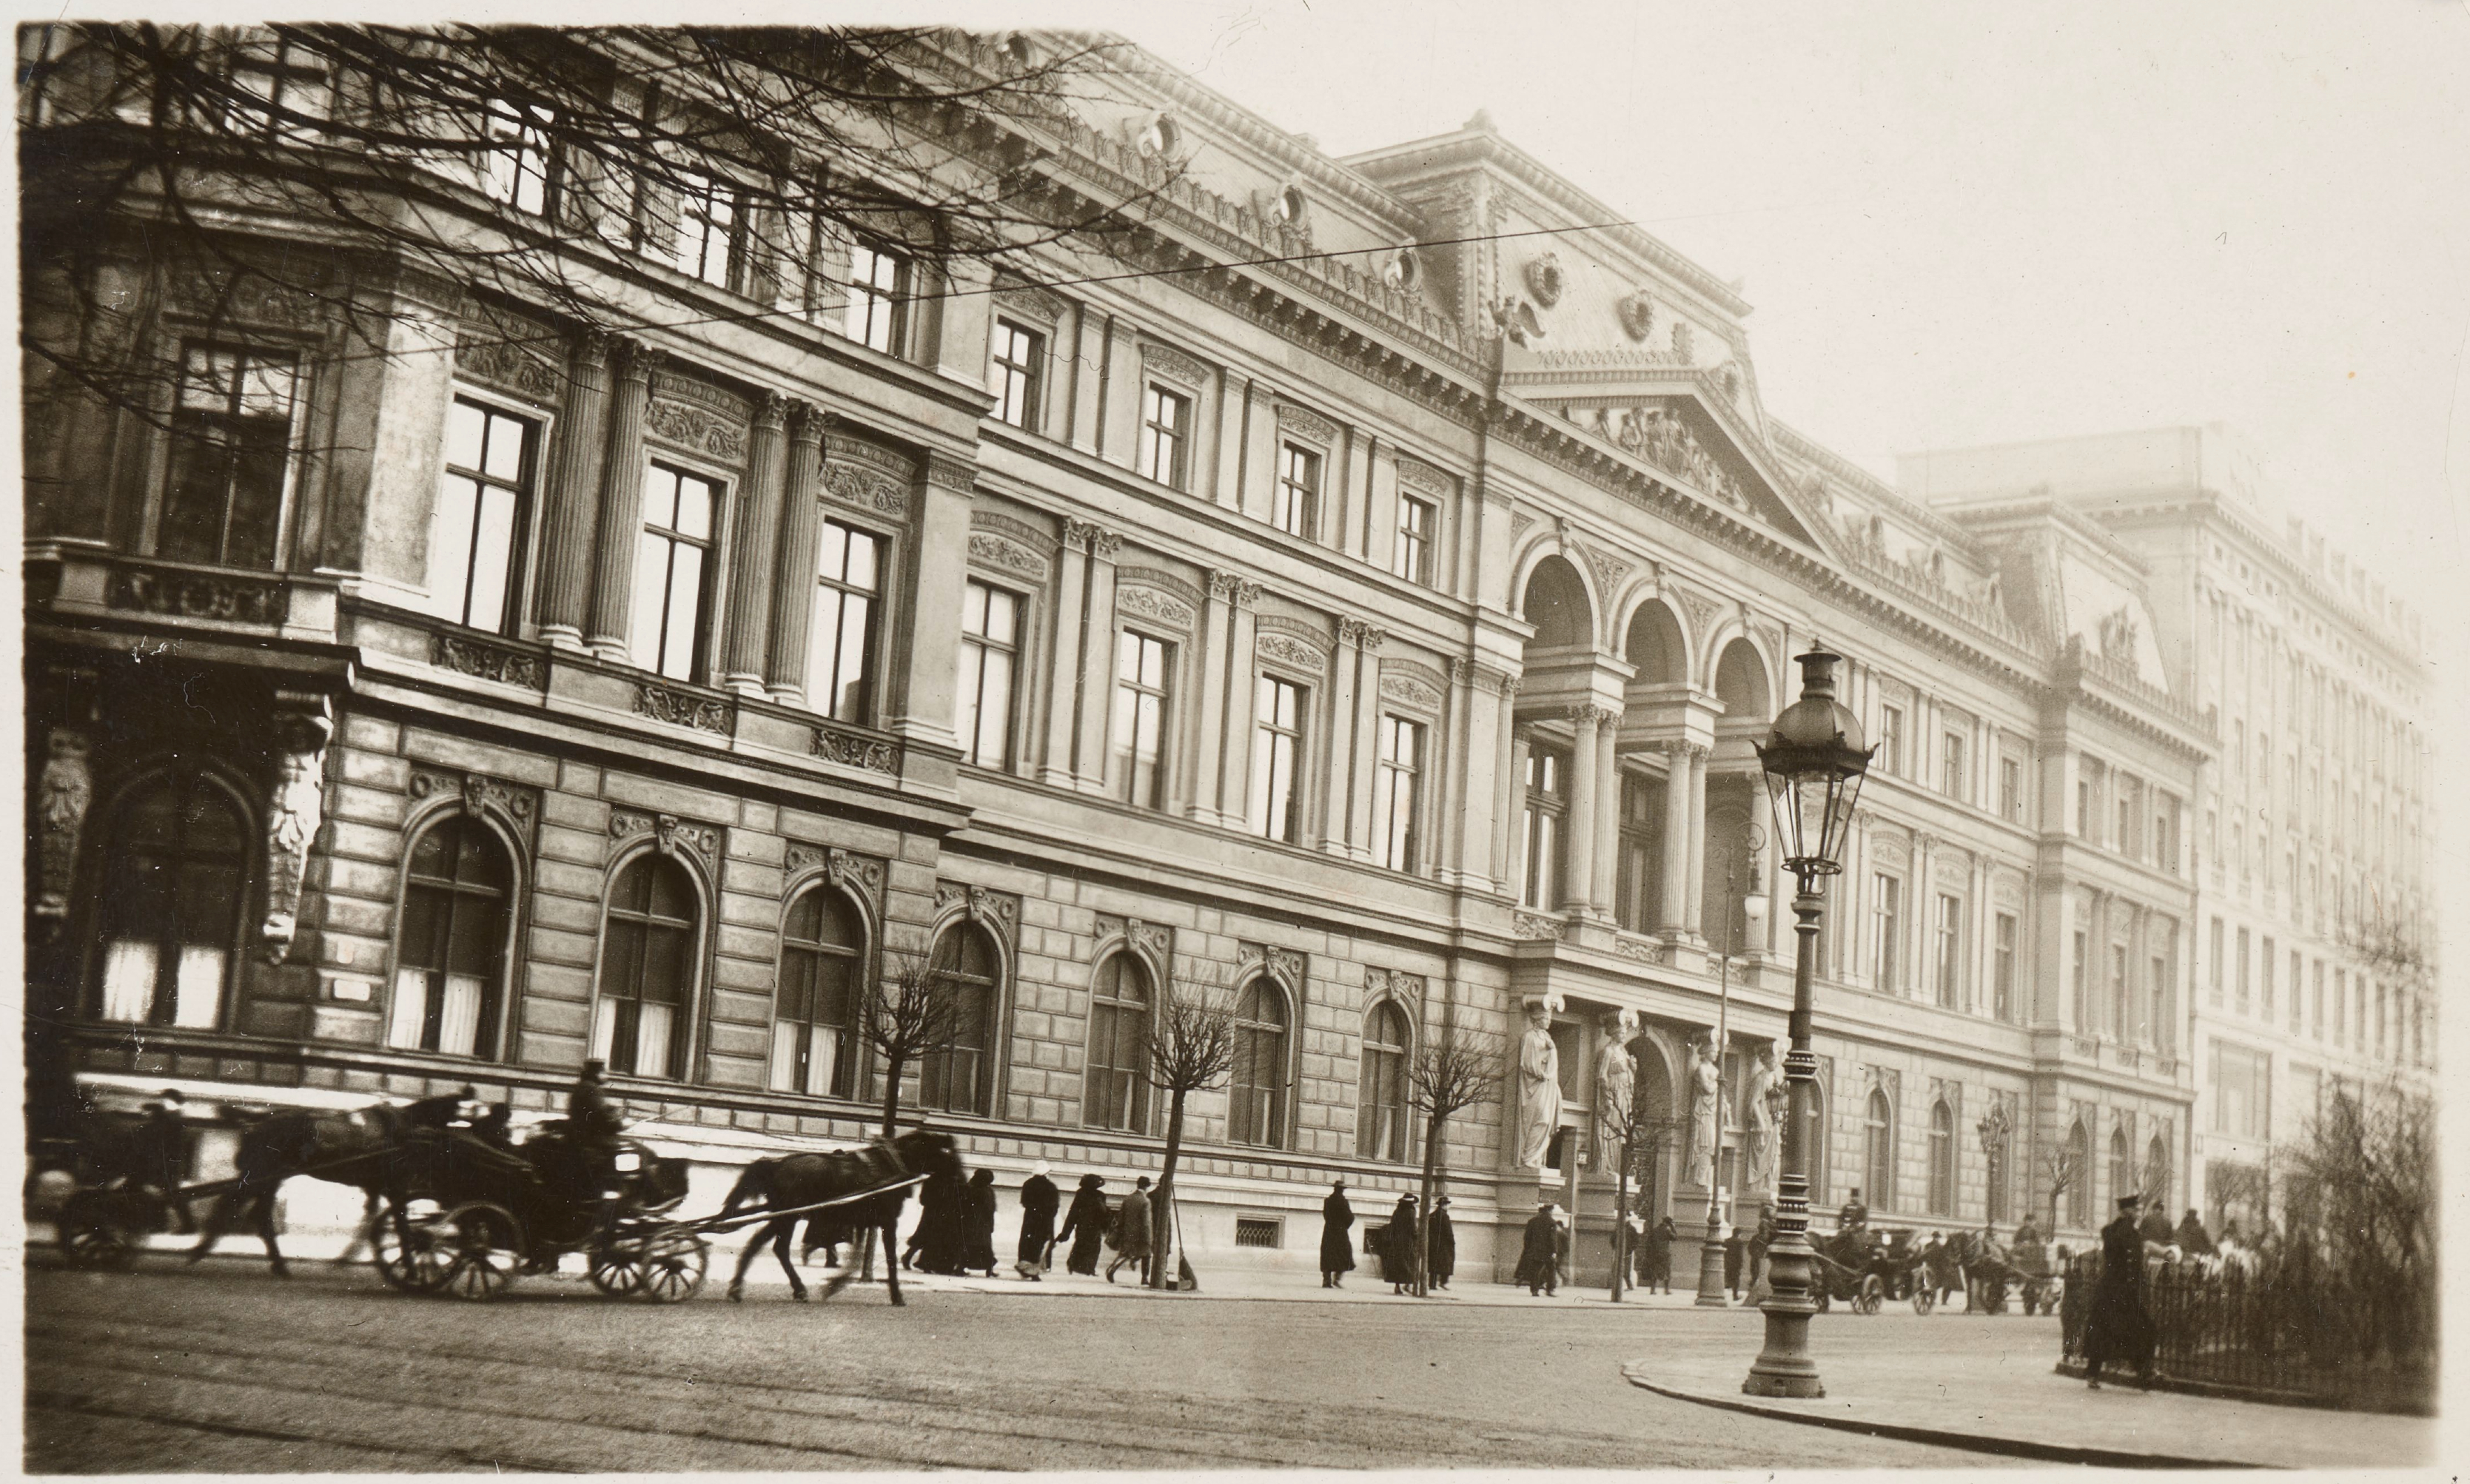 Fasada frontowa pałacu Kronenberga na fotografii z początku XX wieku. Foto: Polona